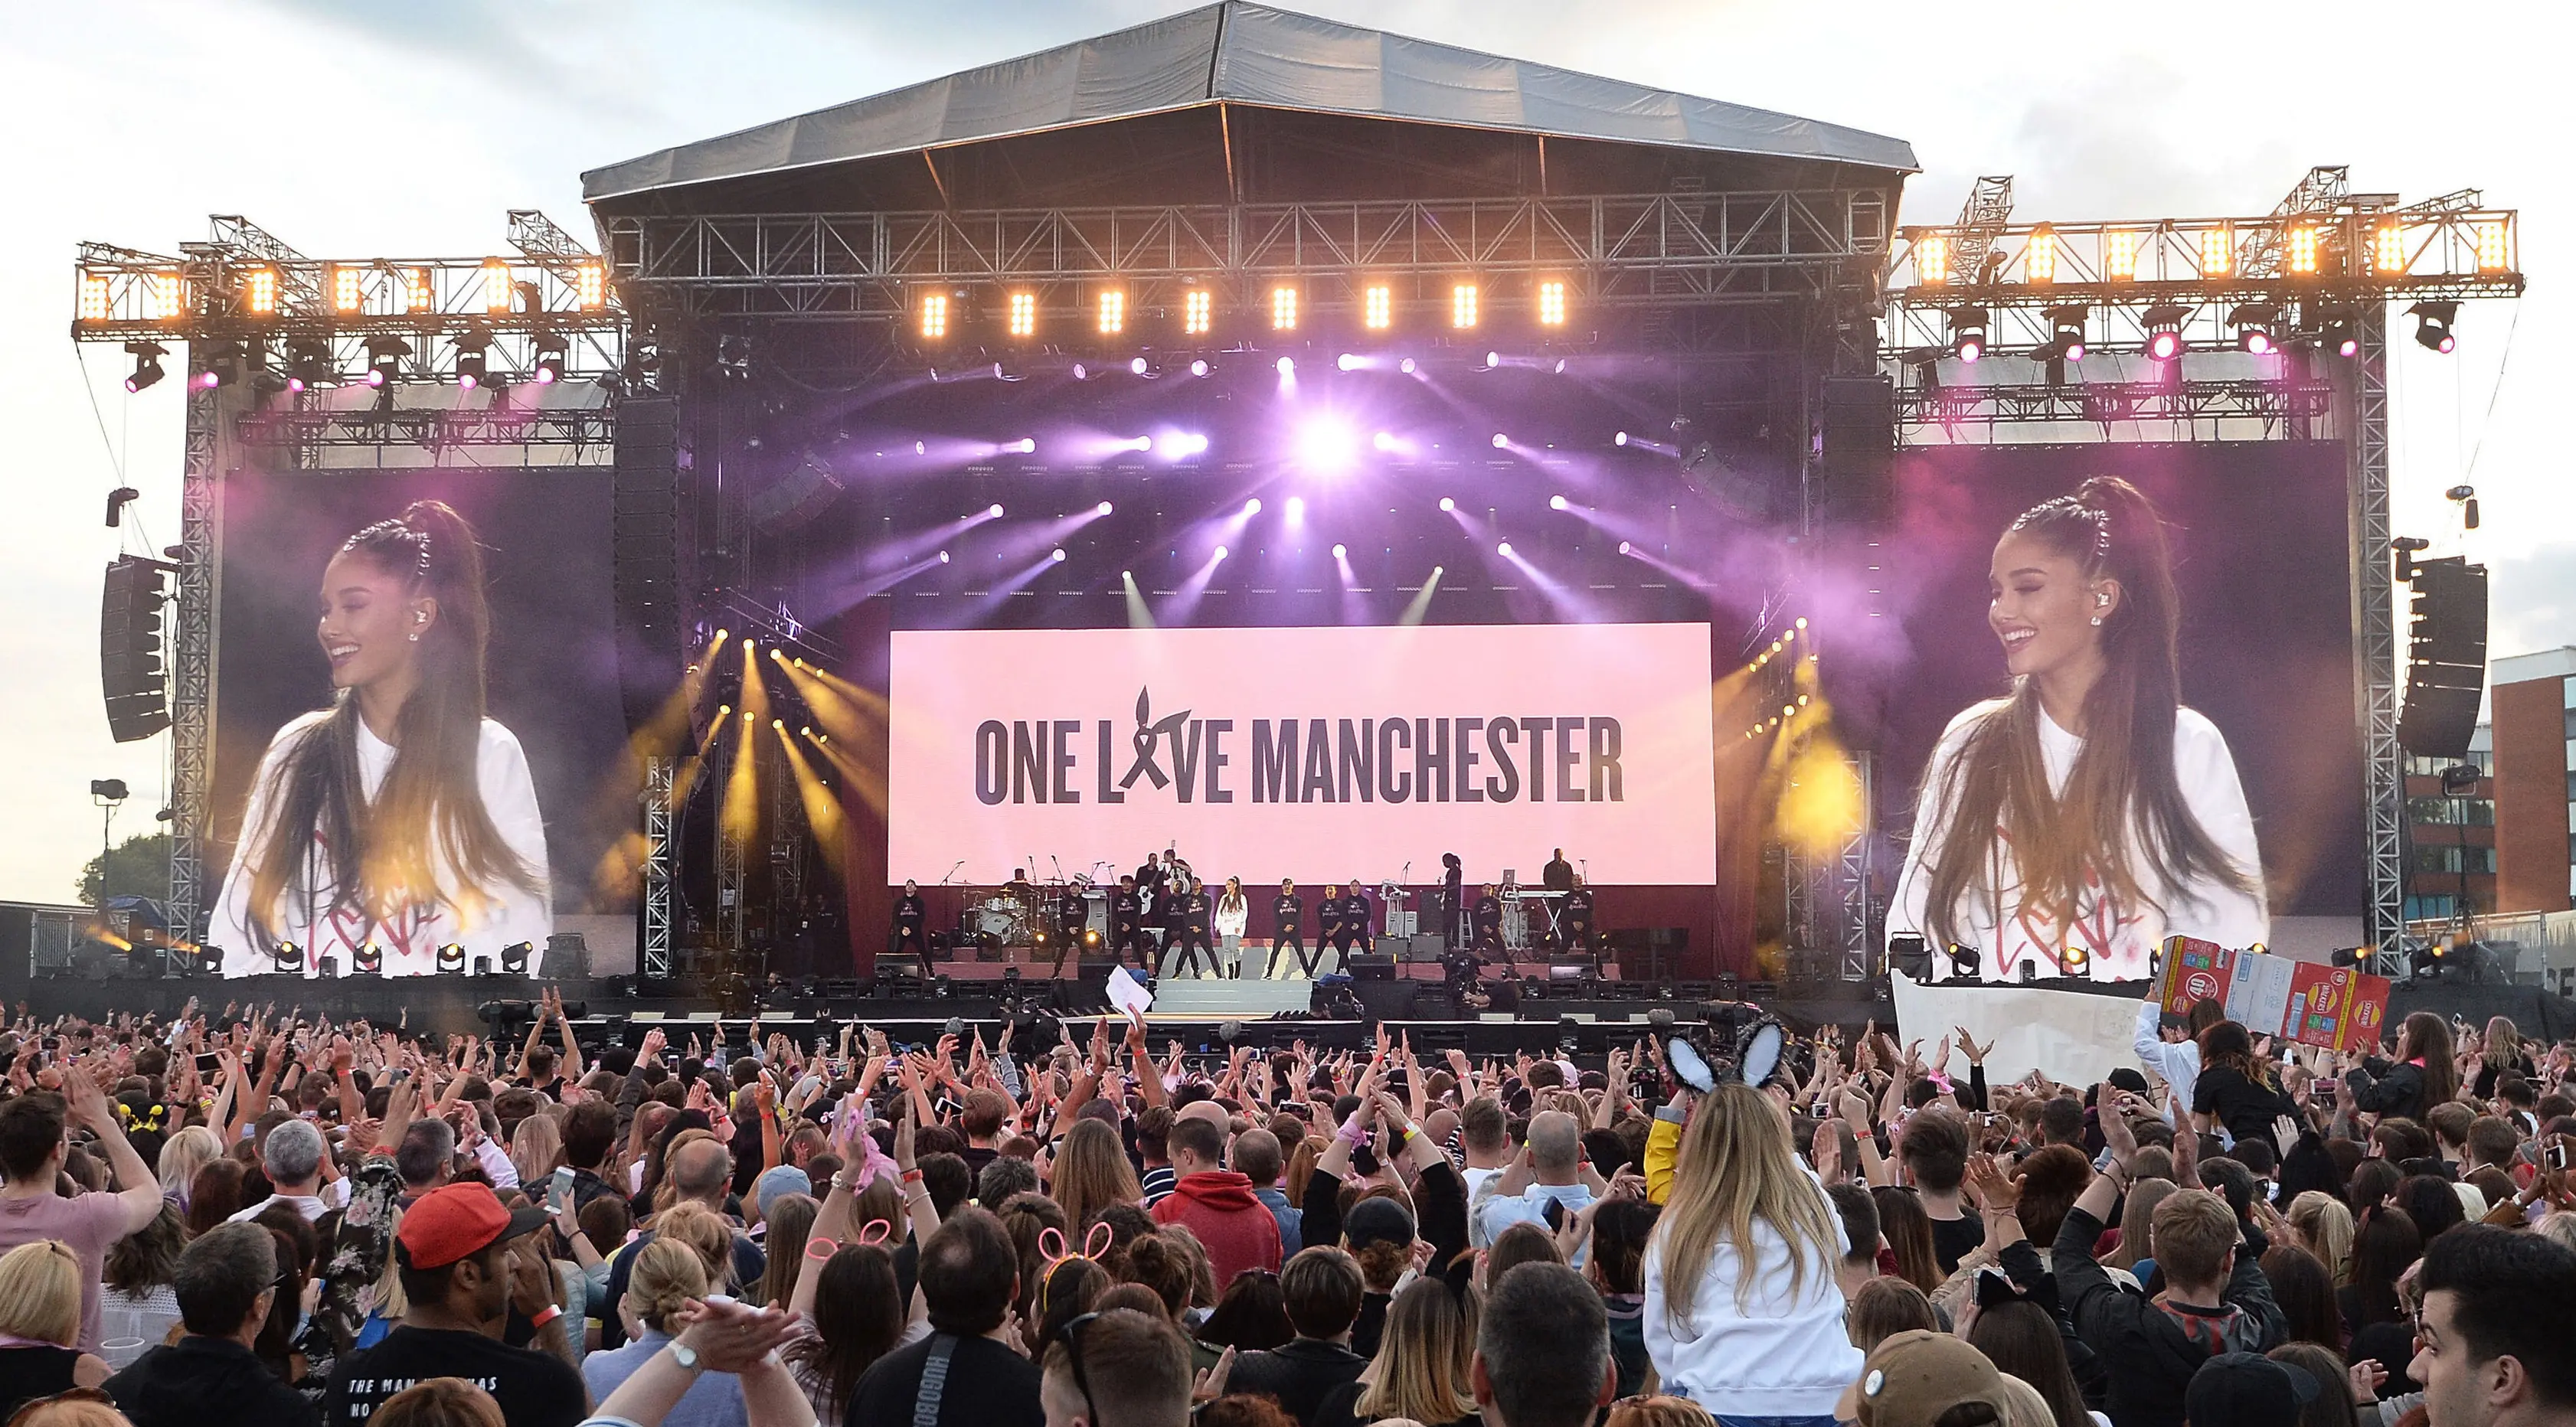 Penyanyi Ariana Grande menggelar konser amal bertajuk "One Love Manchester" di Manchester, Minggu (4/6). Bersama sejumlah musisi, Ariana Grande mengumpulkan uang bagi para korban ledakan pada akhir konsernya yang terjadi 22 Mei silam. (Dave Hogan via AP)